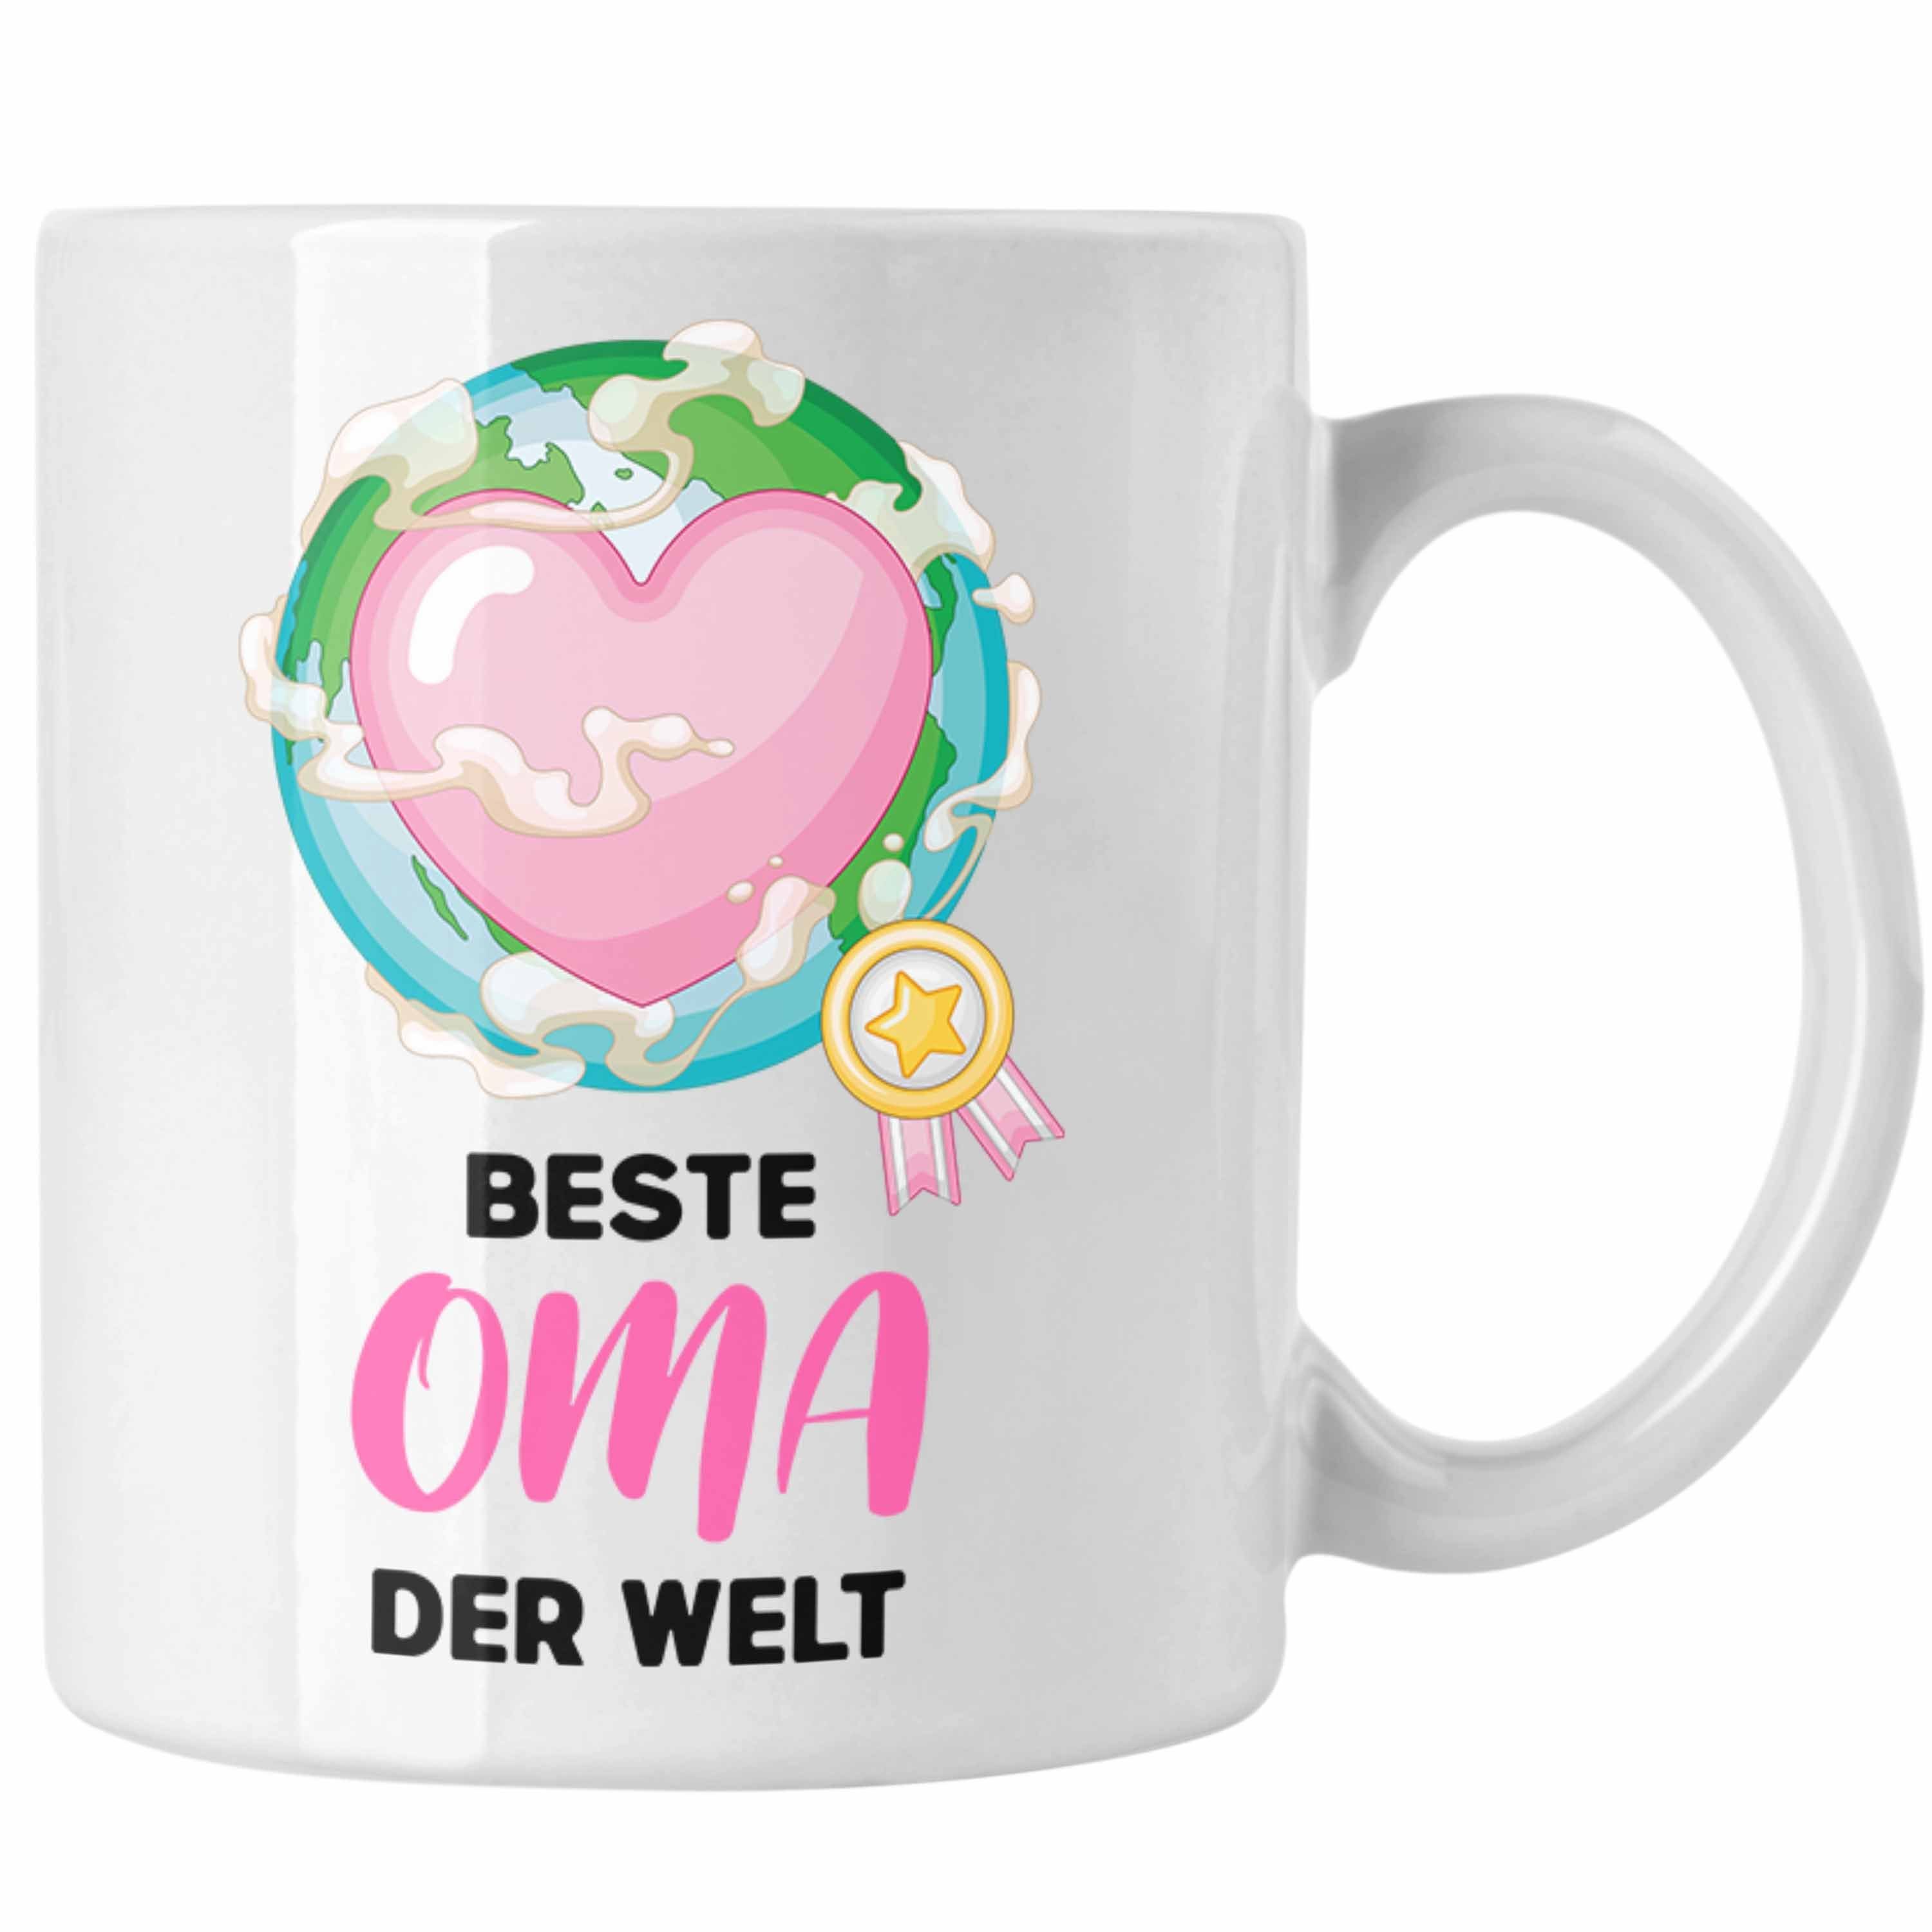 Trendation Tasse Trendation - Beste Oma Der Welt Geschenk Tasse Kaffeetasse Spruch Lustig von Enkel zum Geburtstag Weihnachten Weiss